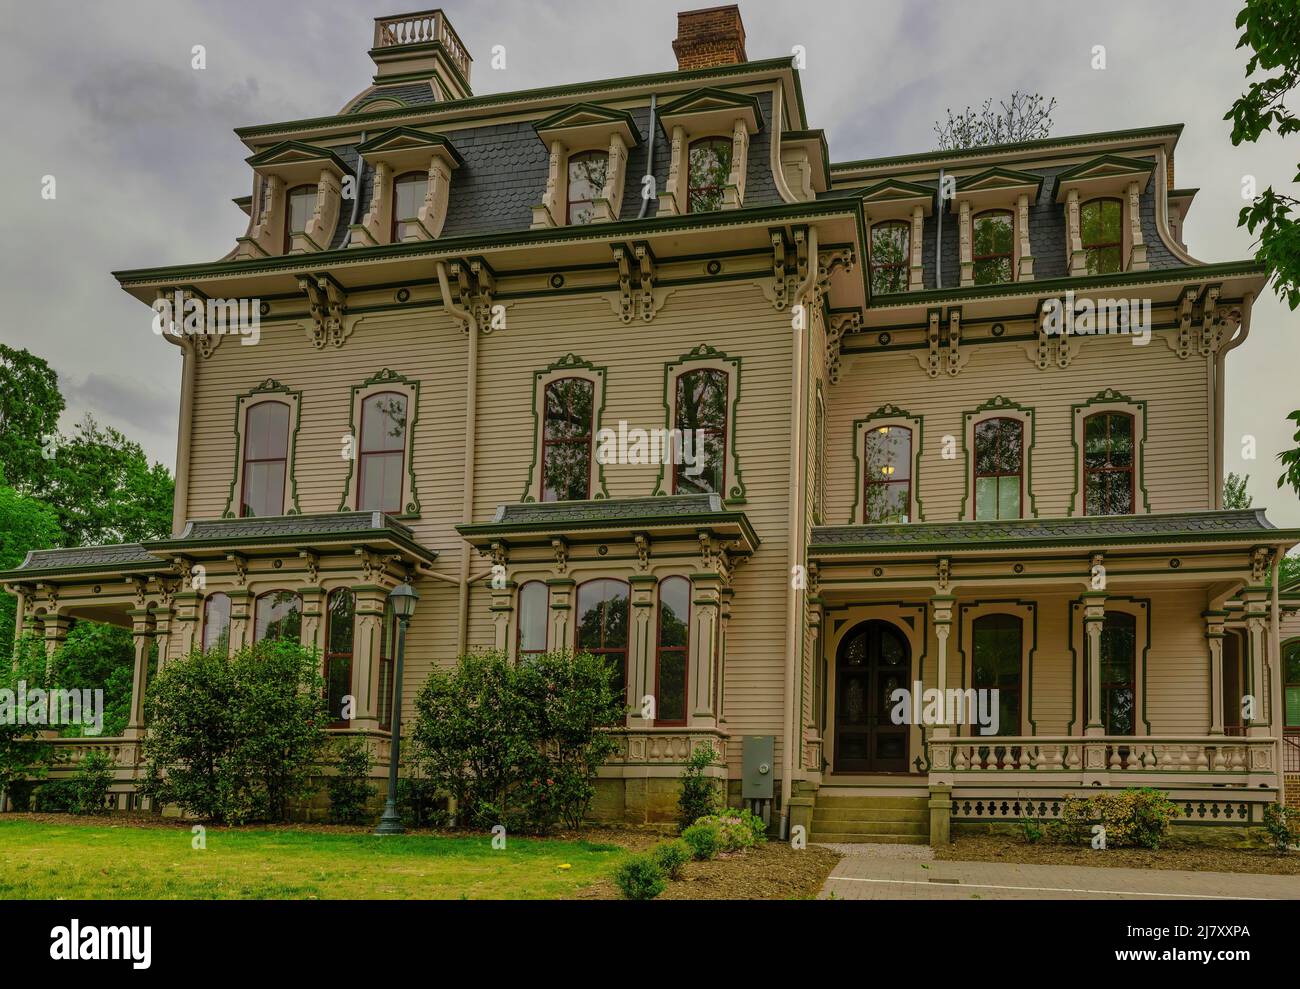 Raleigh, Carolina del Norte, Estados Unidos - 1 de mayo de 2022:Casa histórica Fannie Heck construida en 1870. Fannie Heck era activista y autora. Foto de stock